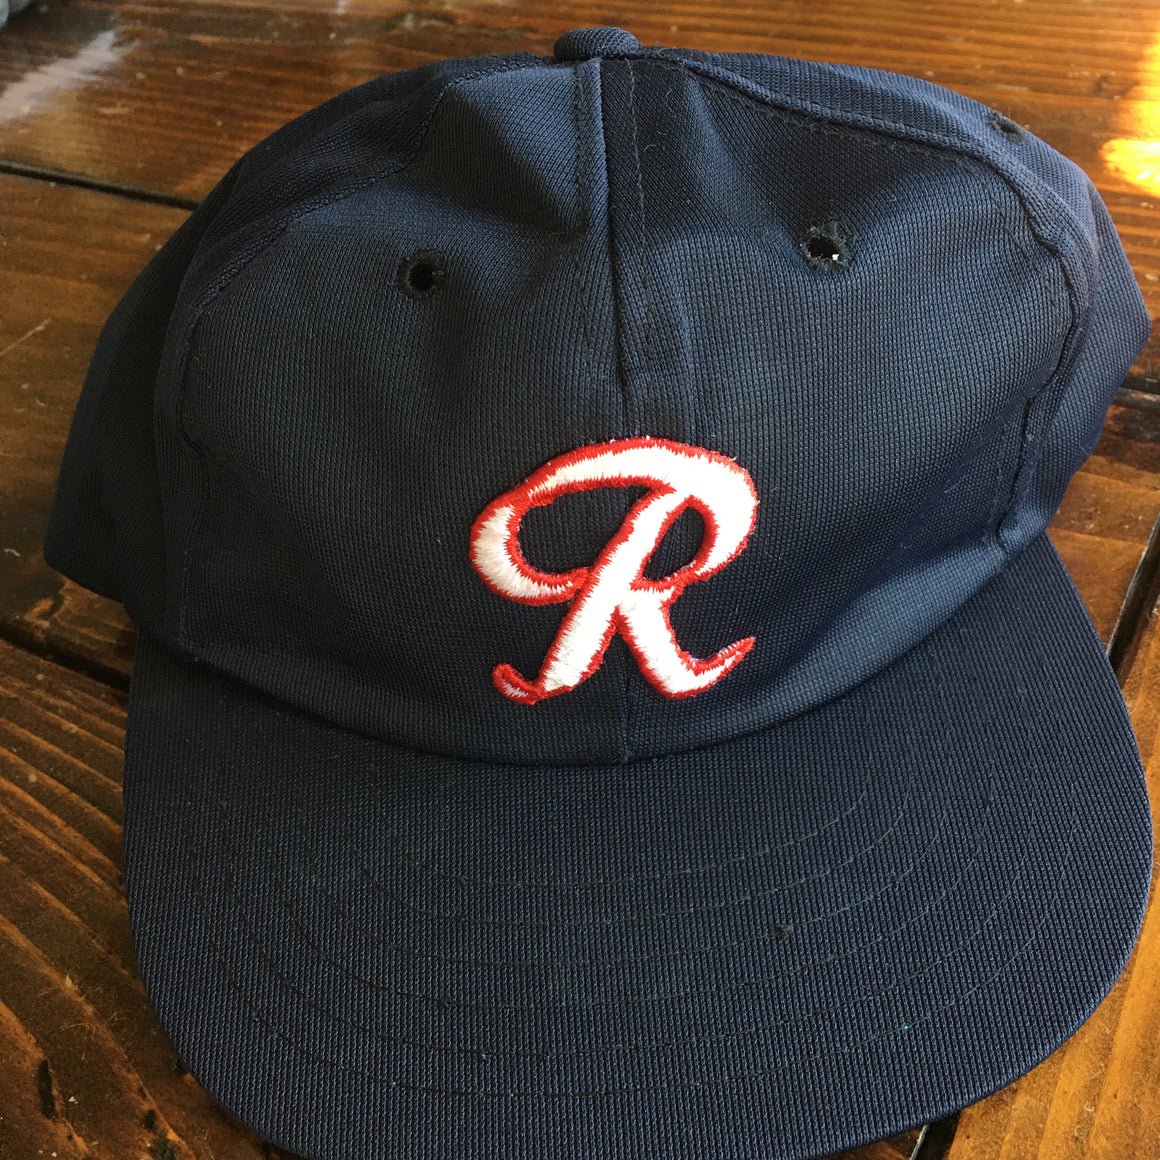 Rainier beer snapback hat